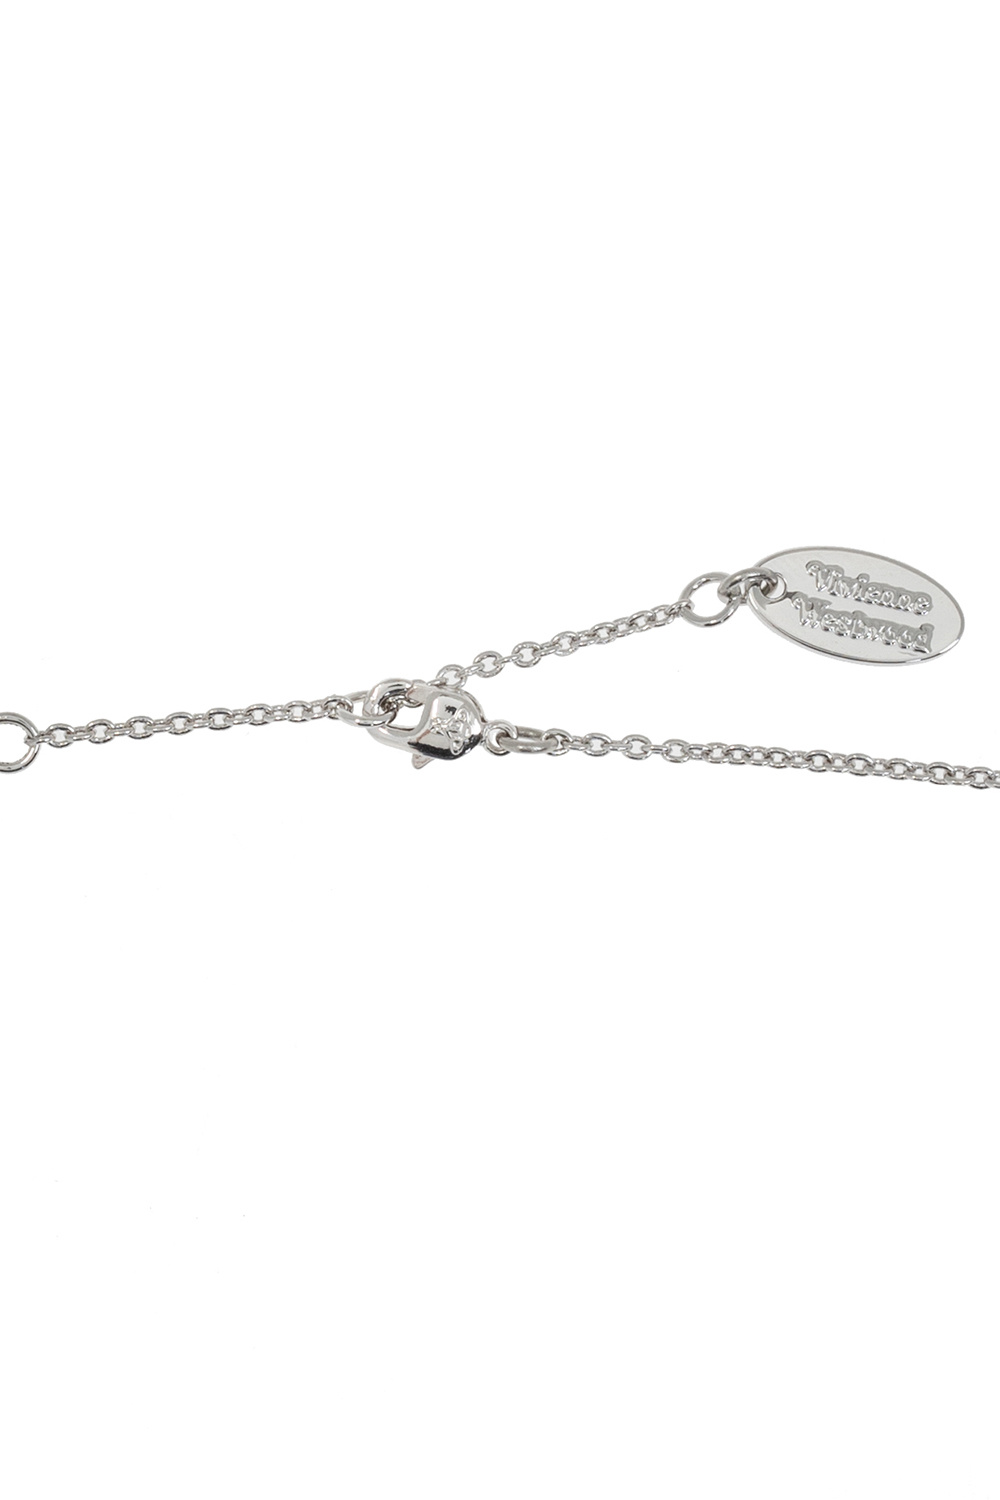 Vivienne Westwood ‘Claretta’ necklace